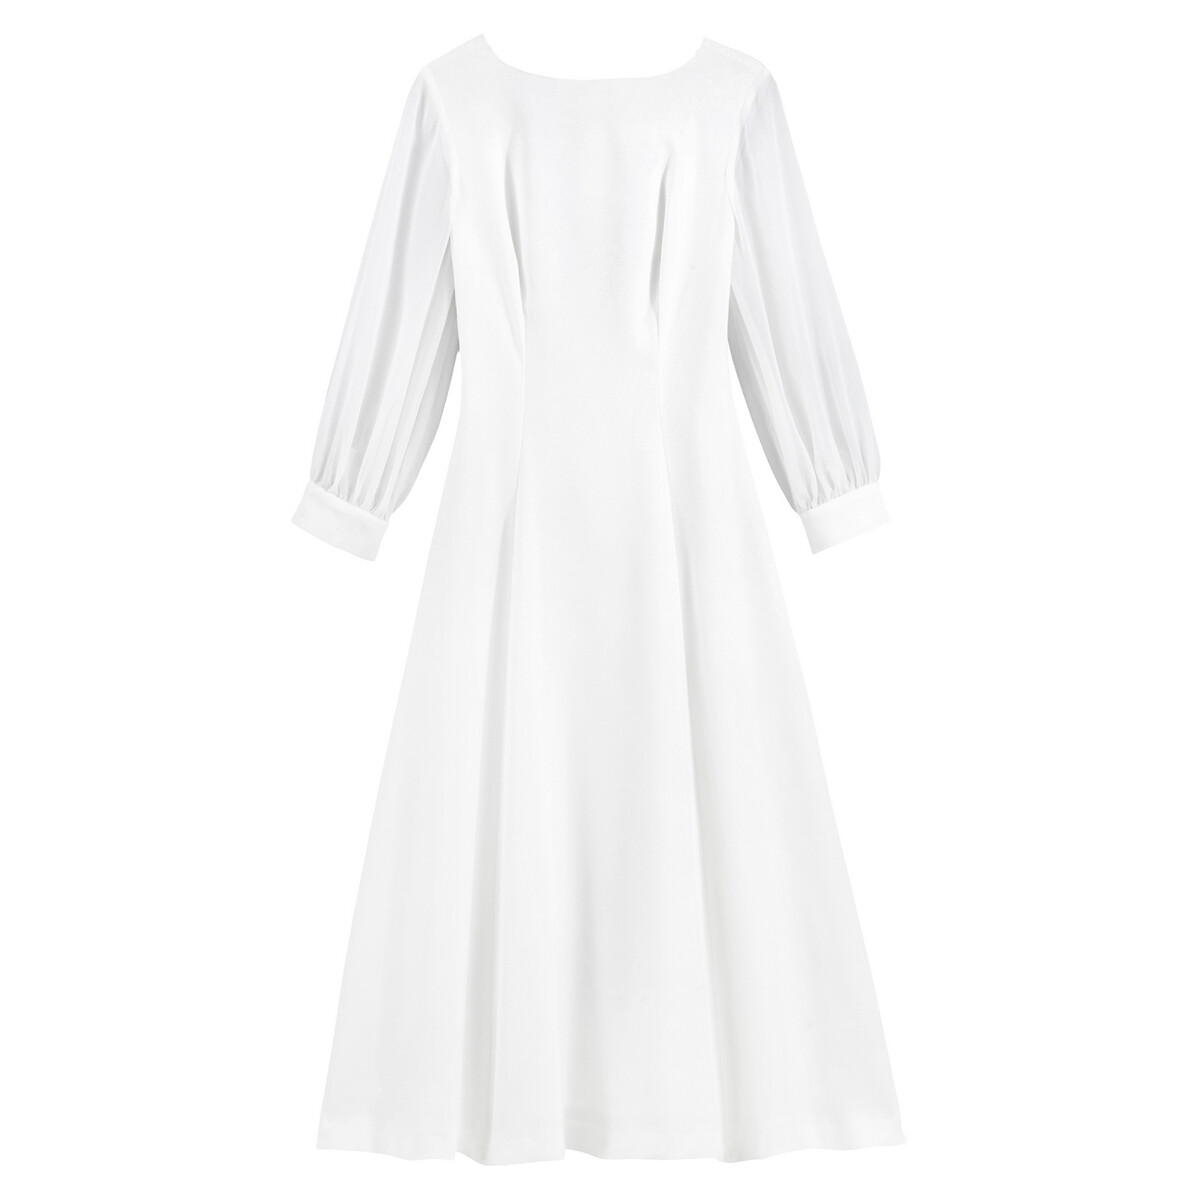 Платье La Redoute Невесты длинное V-образное декольте 34 (FR) - 40 (RUS) белый, размер 34 (FR) - 40 (RUS) Невесты длинное V-образное декольте 34 (FR) - 40 (RUS) белый - фото 5